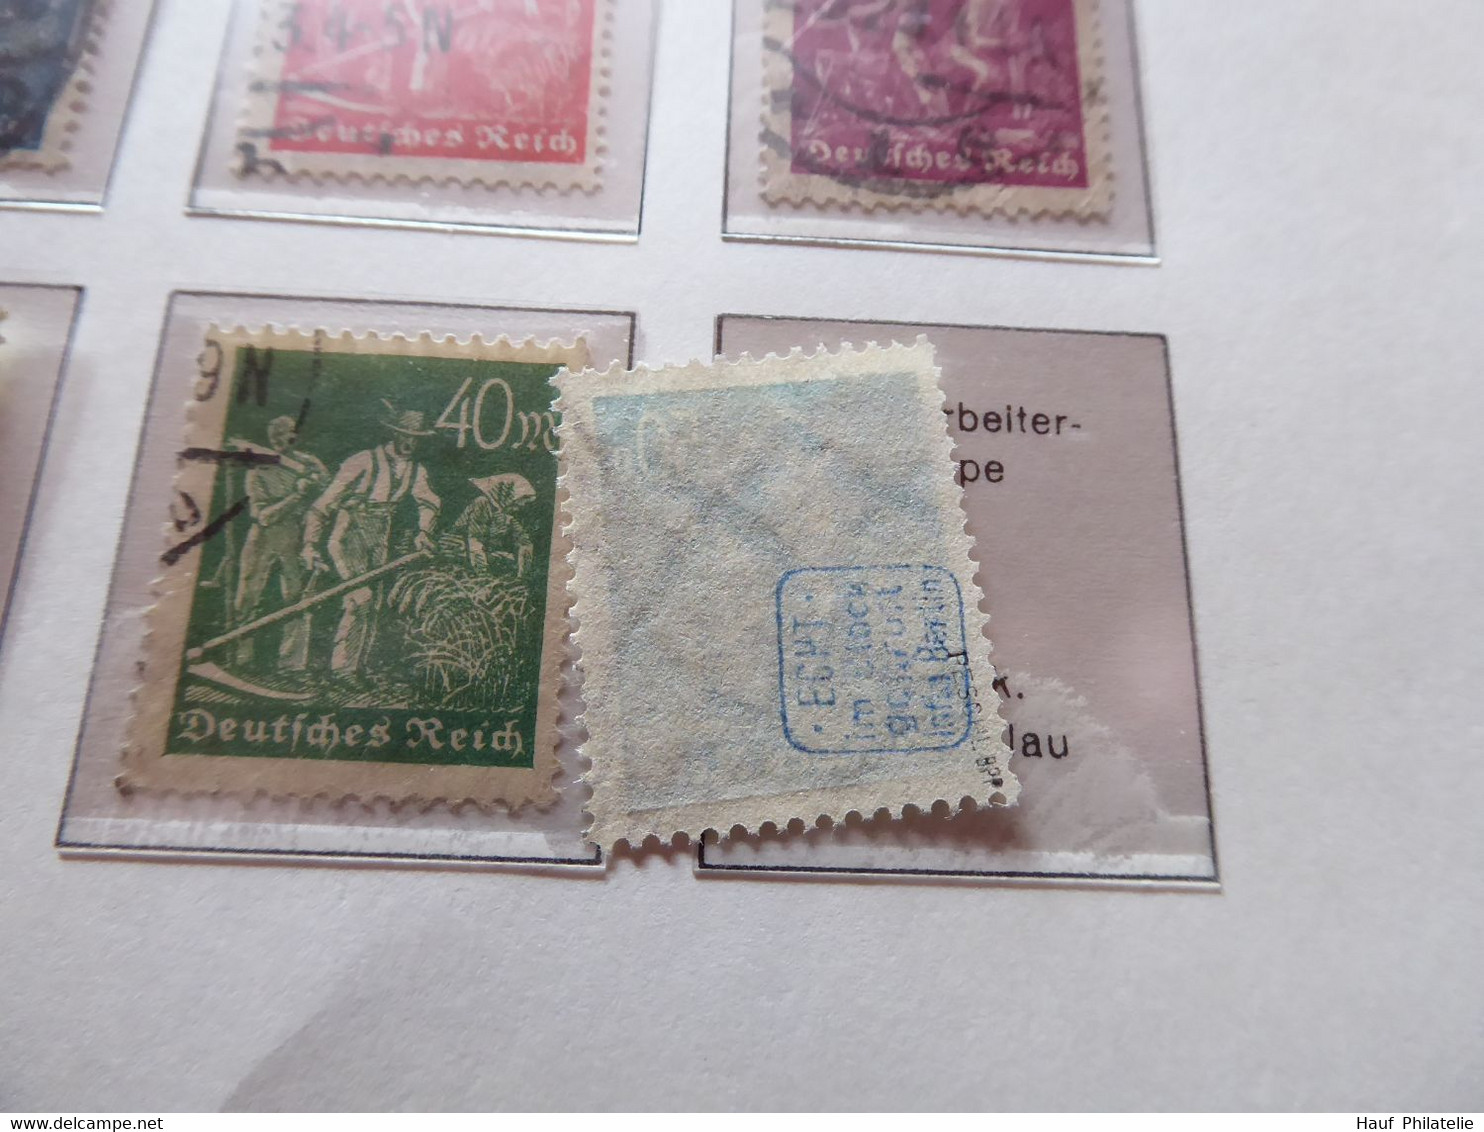 Deutsches Reich Sammlung ab 1875 - 1932 gestempelt auf KA-BE Vordrucke (A25-3117)